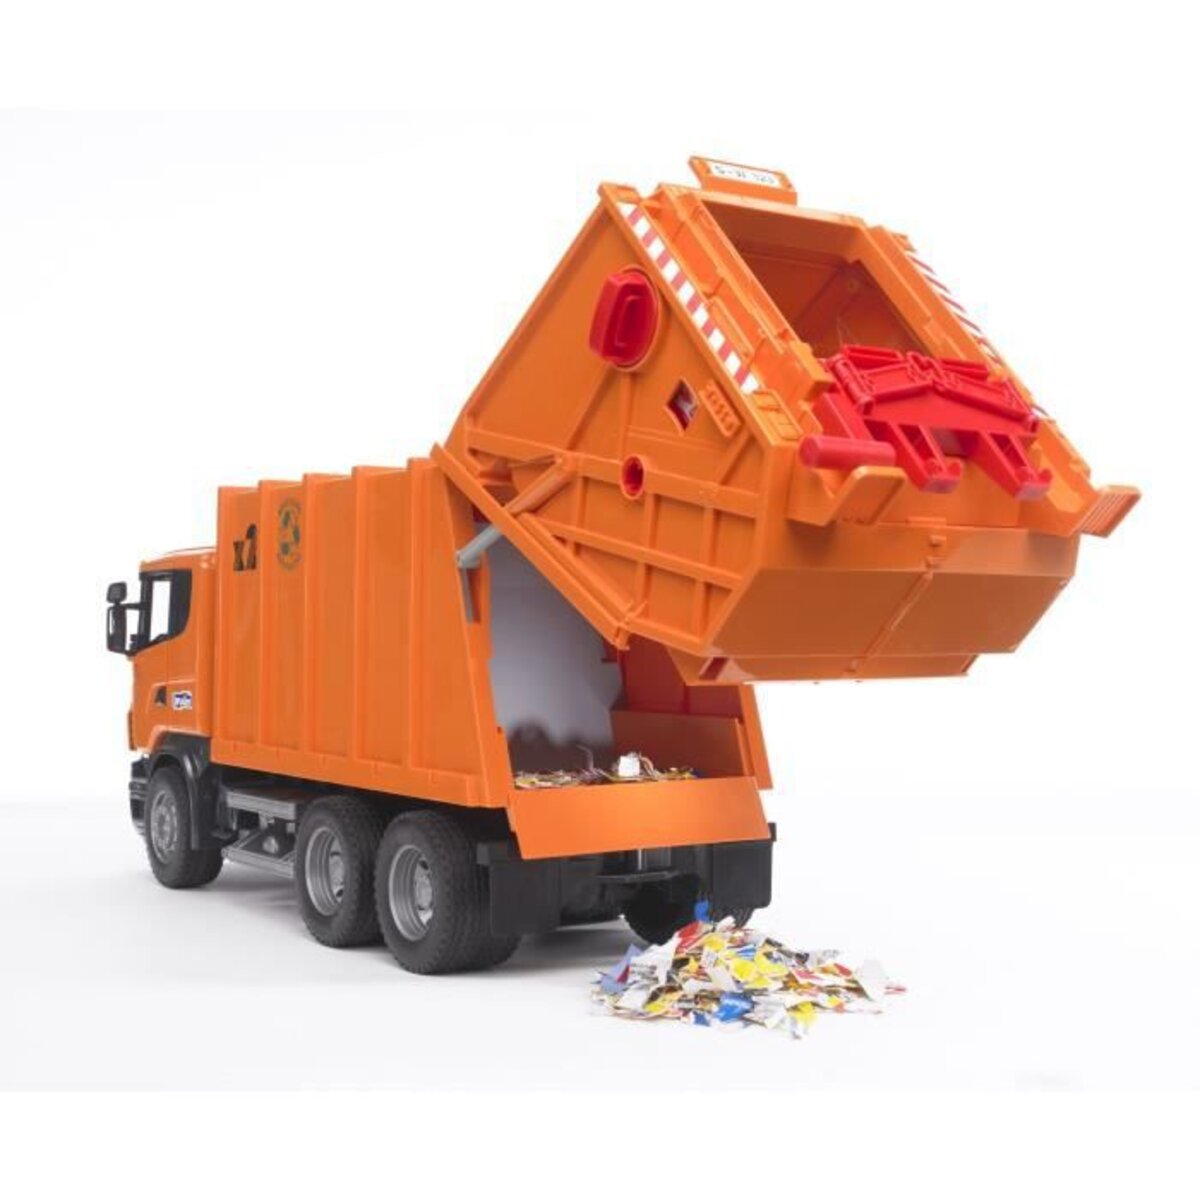 BRUDER - 2812 - Camion poubelle MACK avec 2 poubelles - 69 cms - La Poste